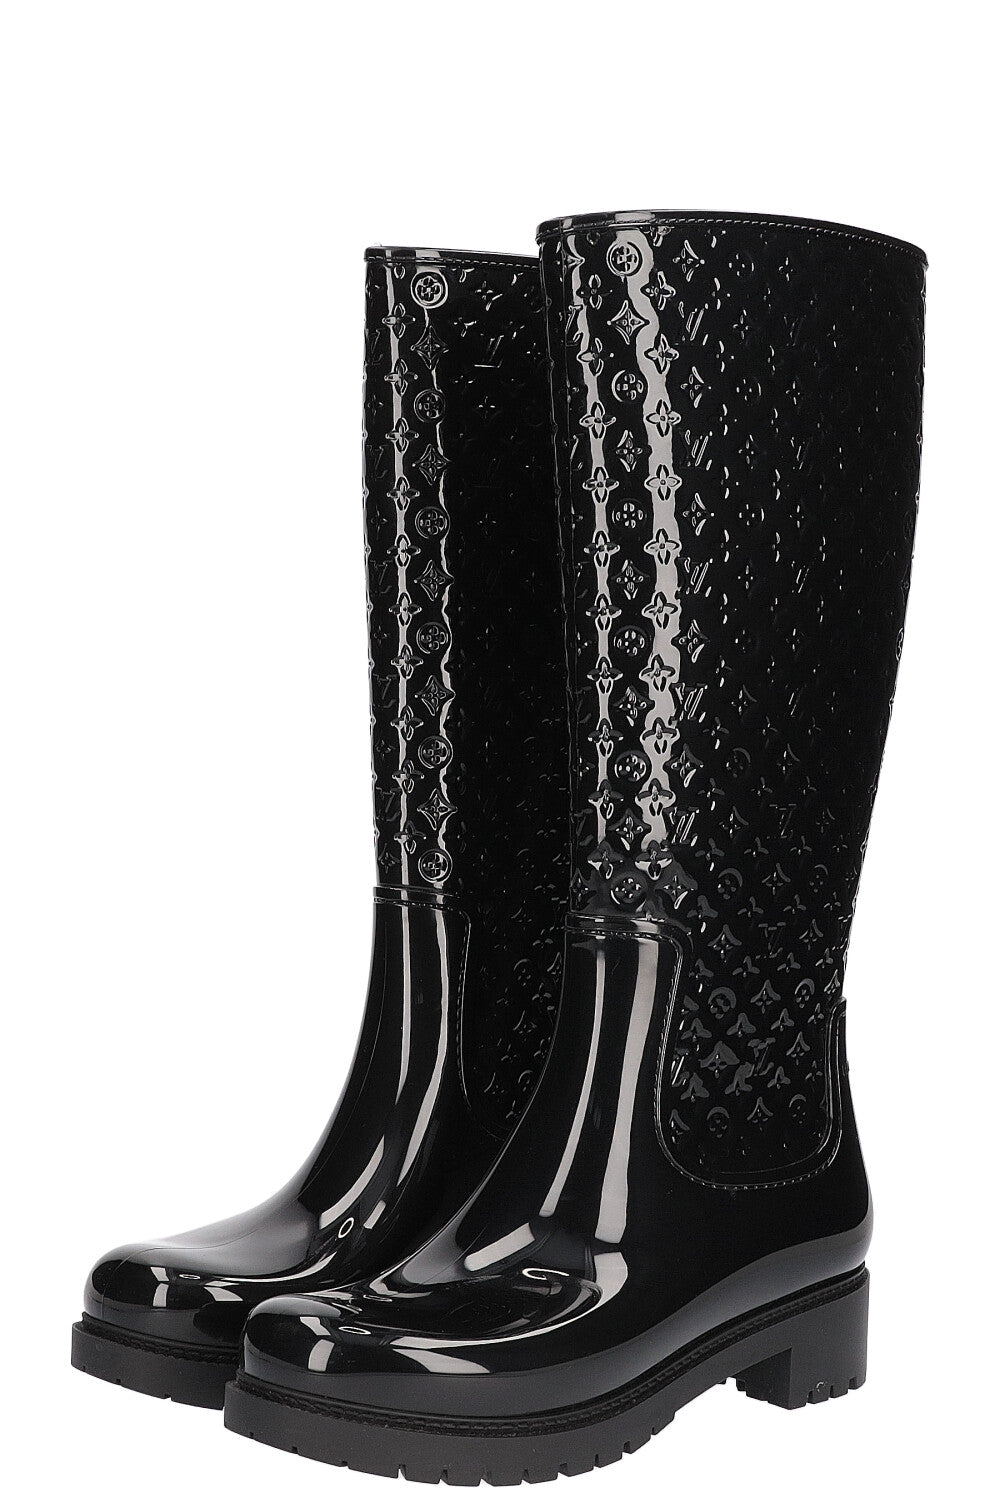 Drops wellington boots Louis Vuitton Black size 38 EU in Rubber - 34364264